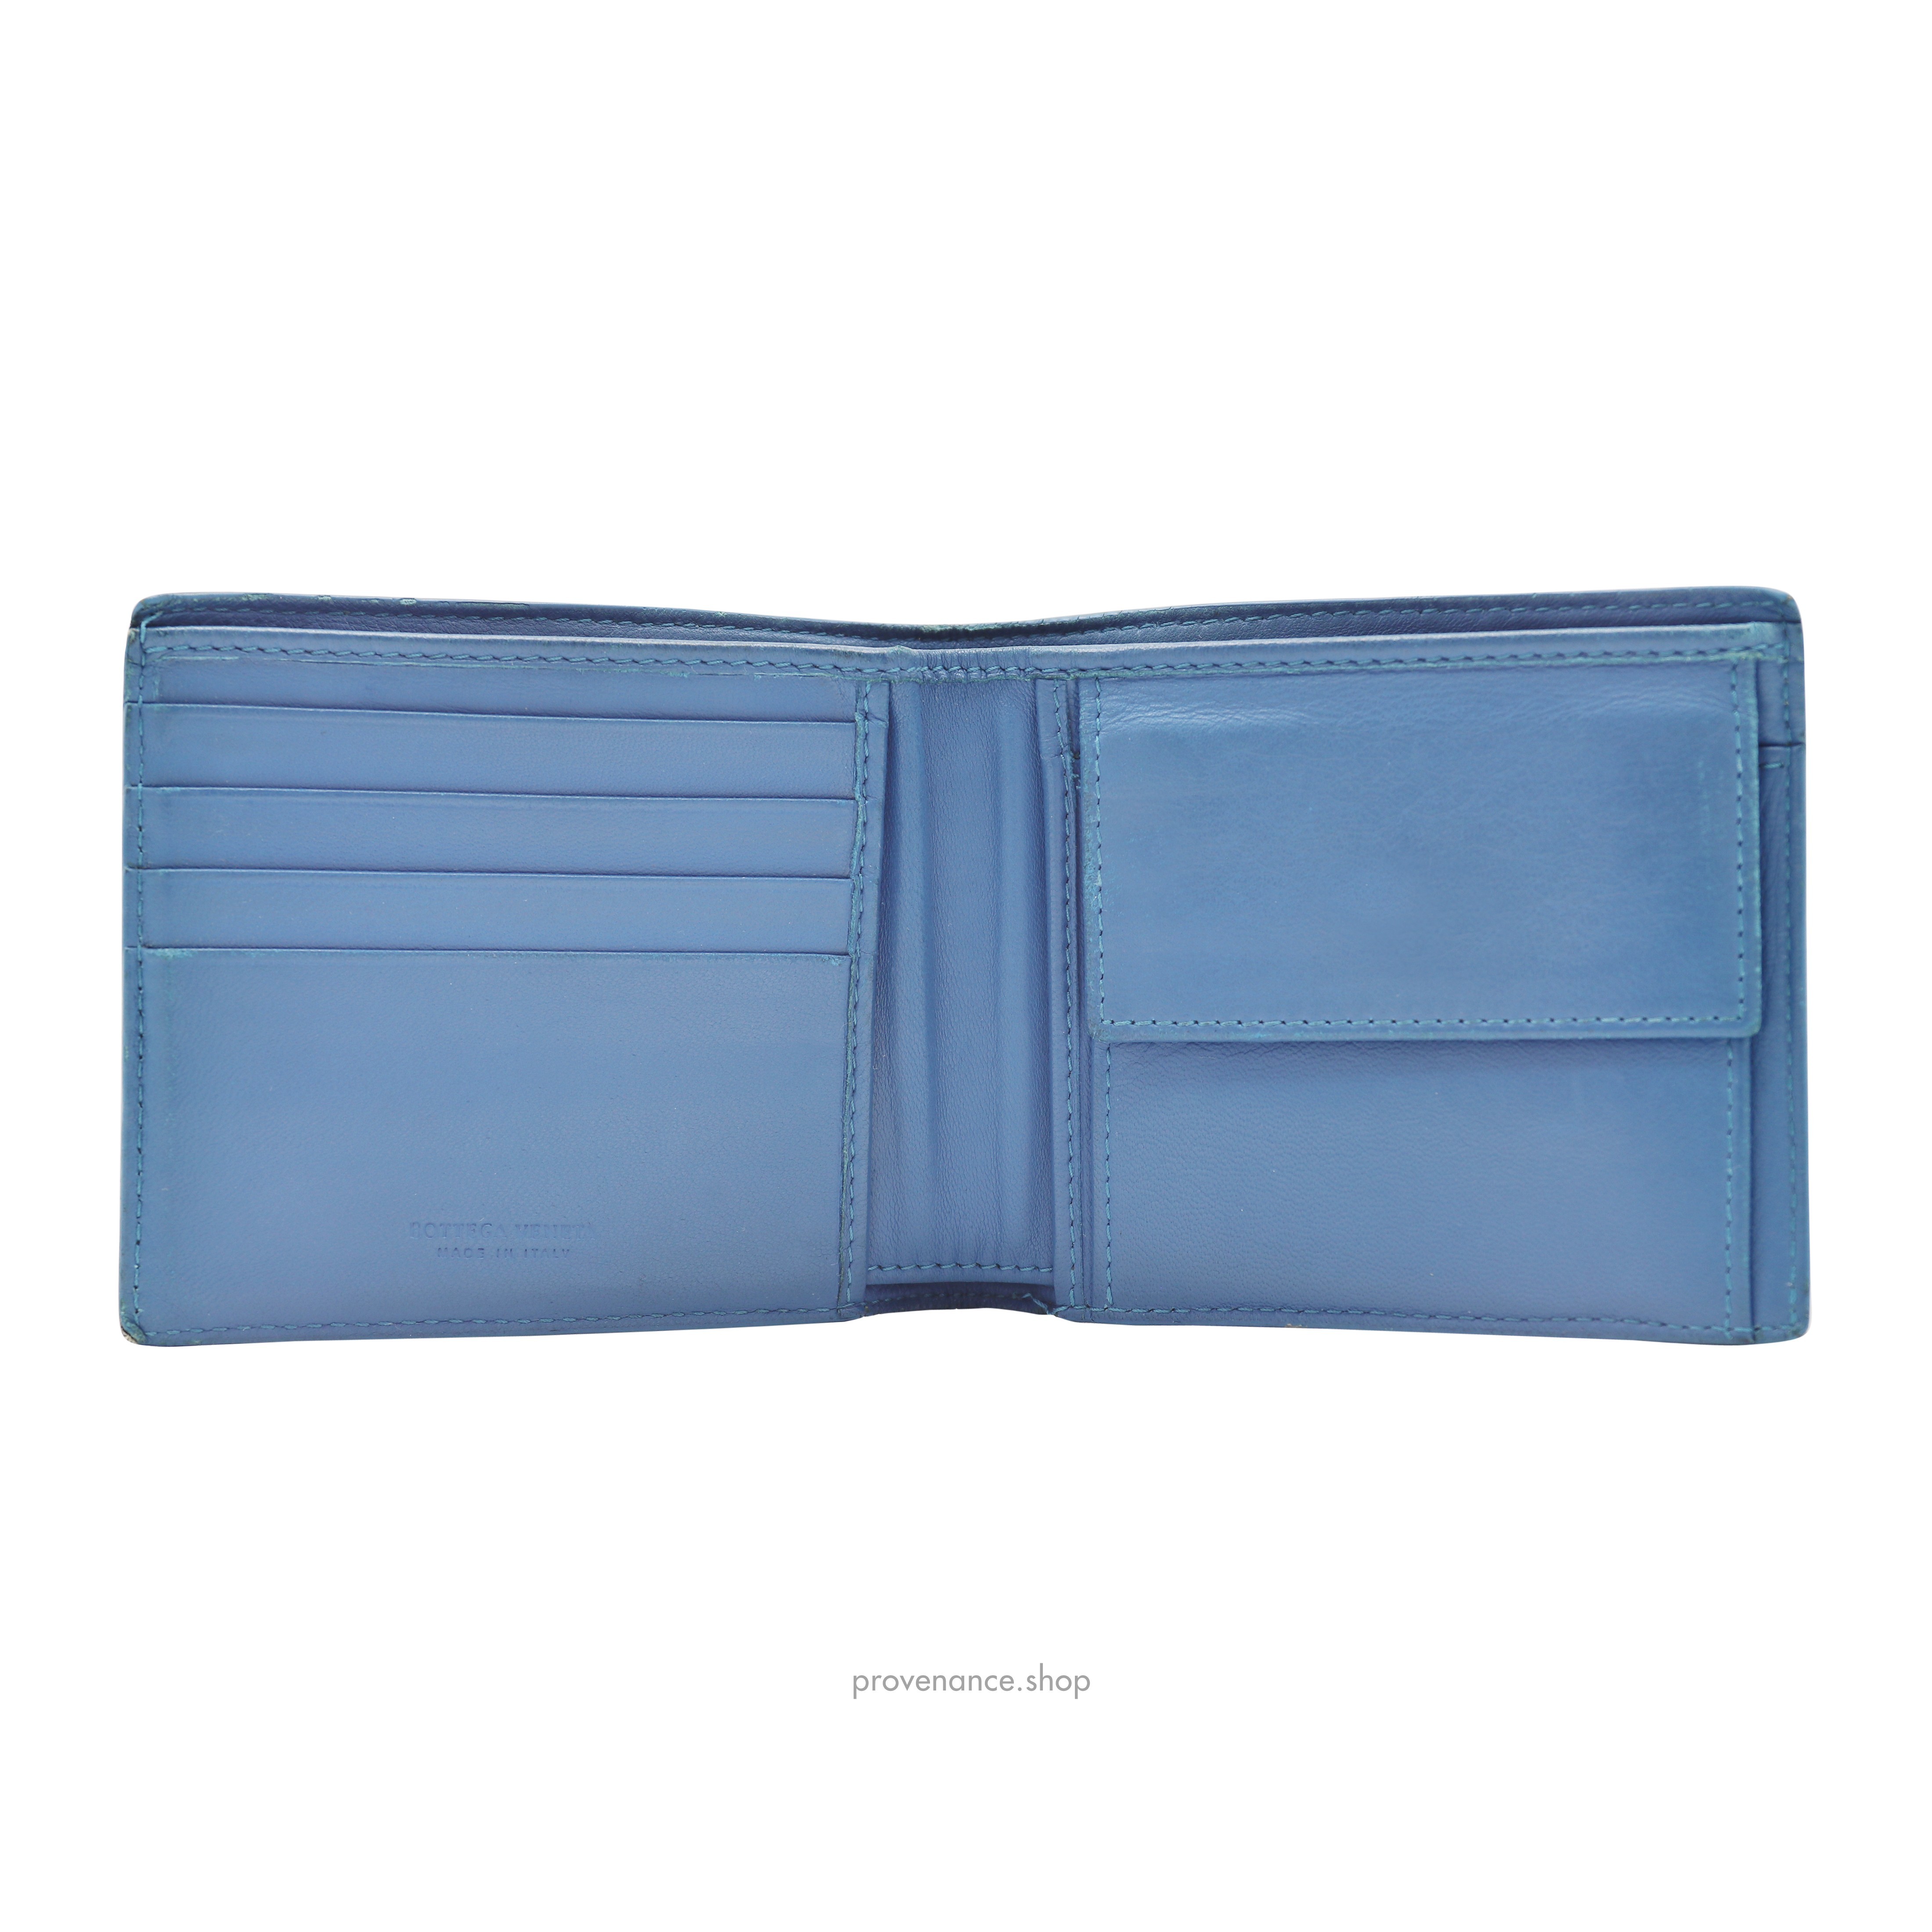 Bifold Wallet - Blue Lizard Leather - 6